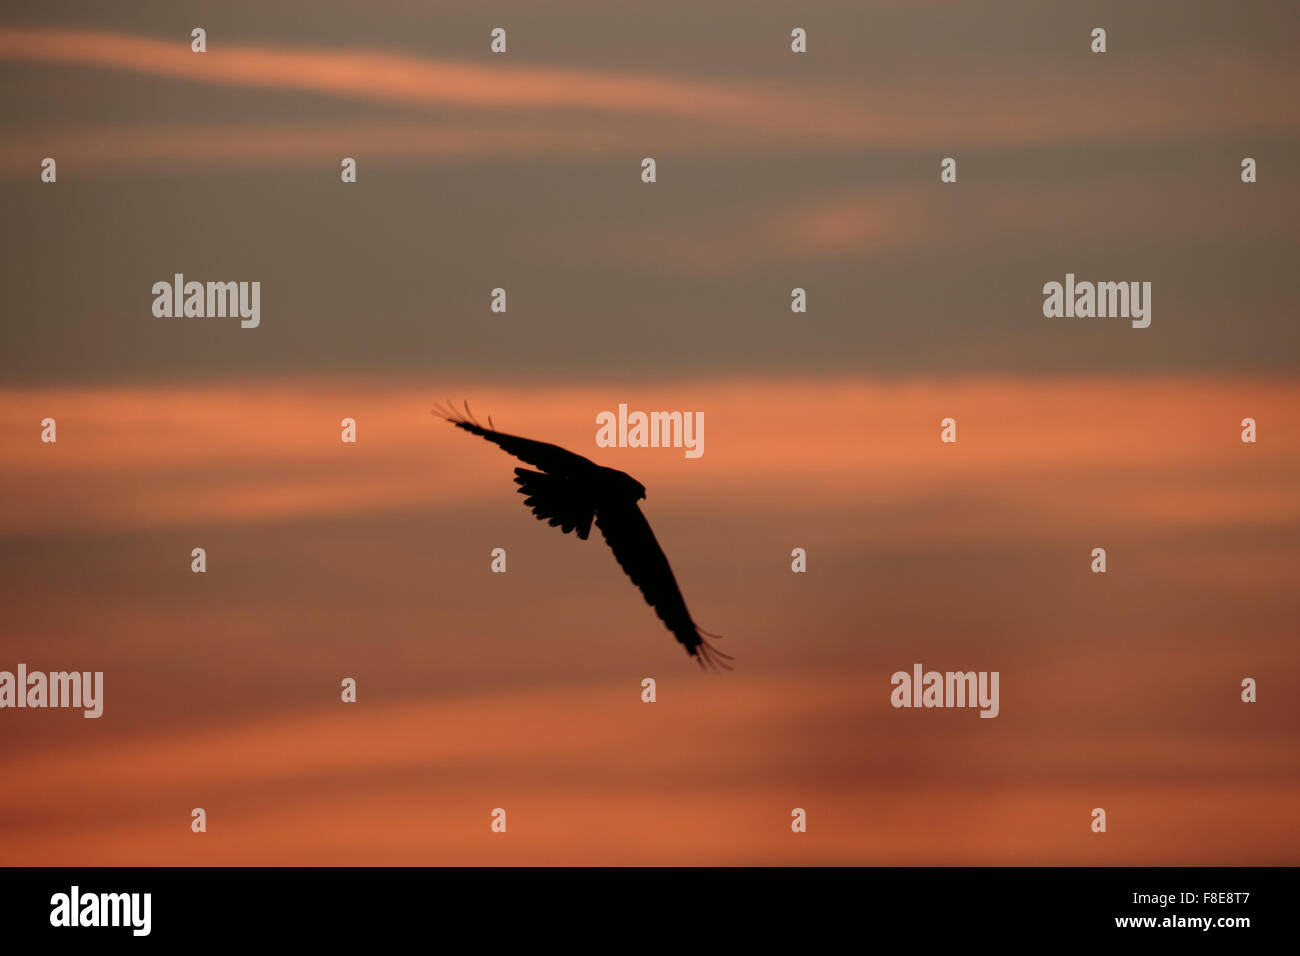 Marsh Harrier in silhouette against orange sunset Stock Photo